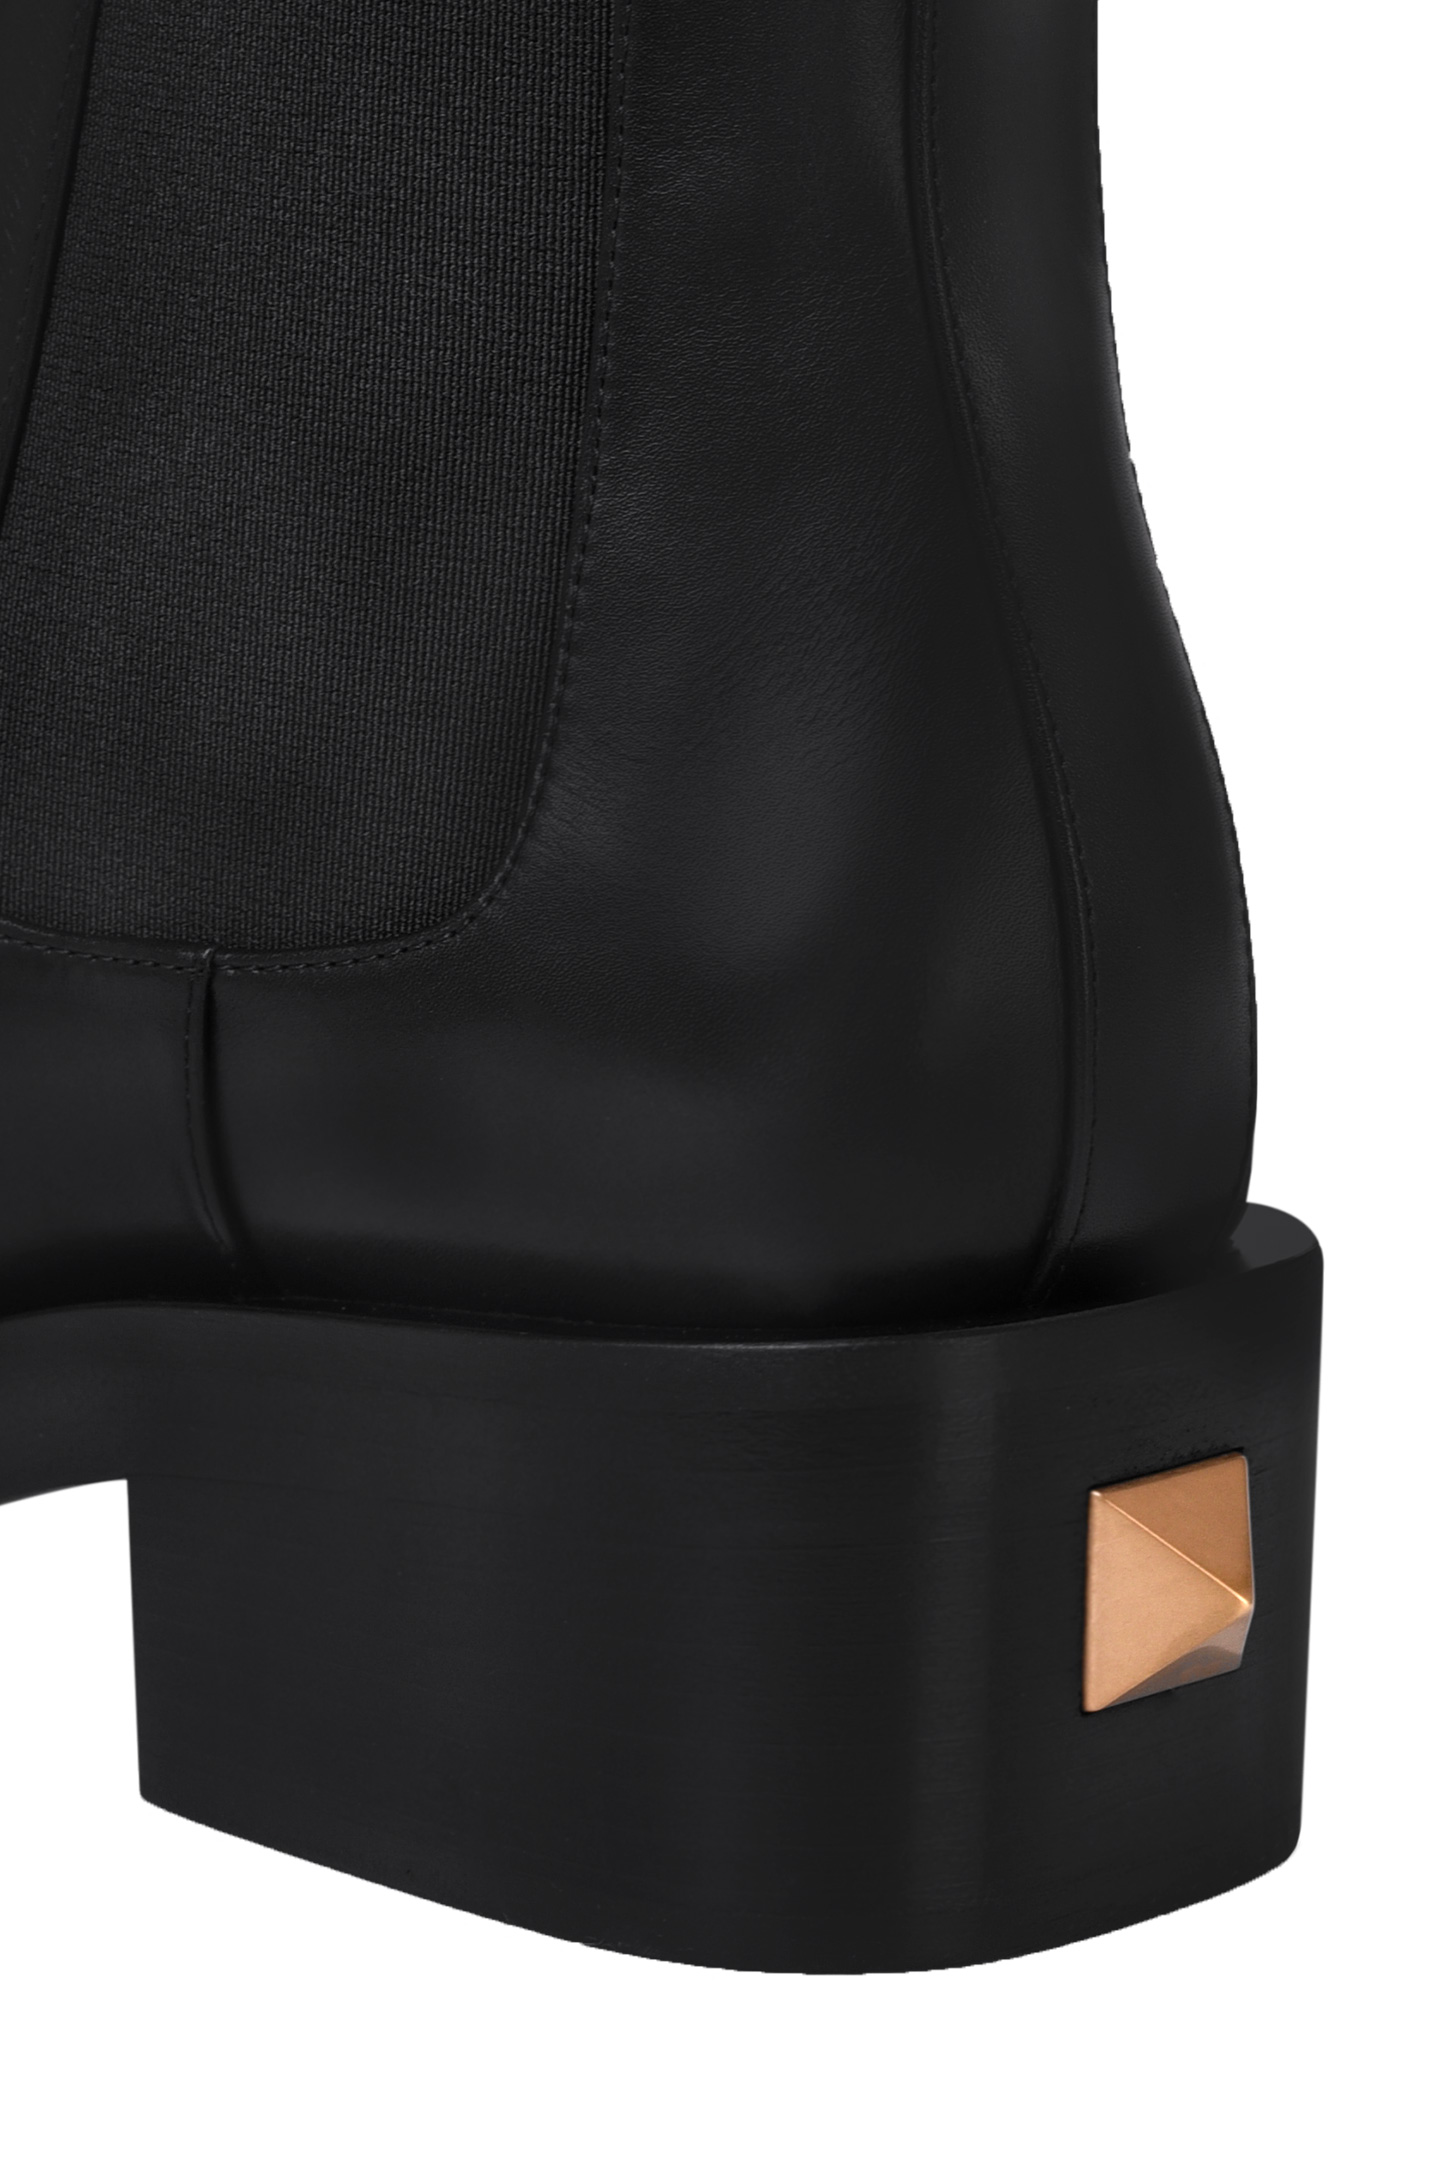 Ботинки VALENTINO GARAVANI WW2S0CW7ZWM, цвет: Черный, Женский